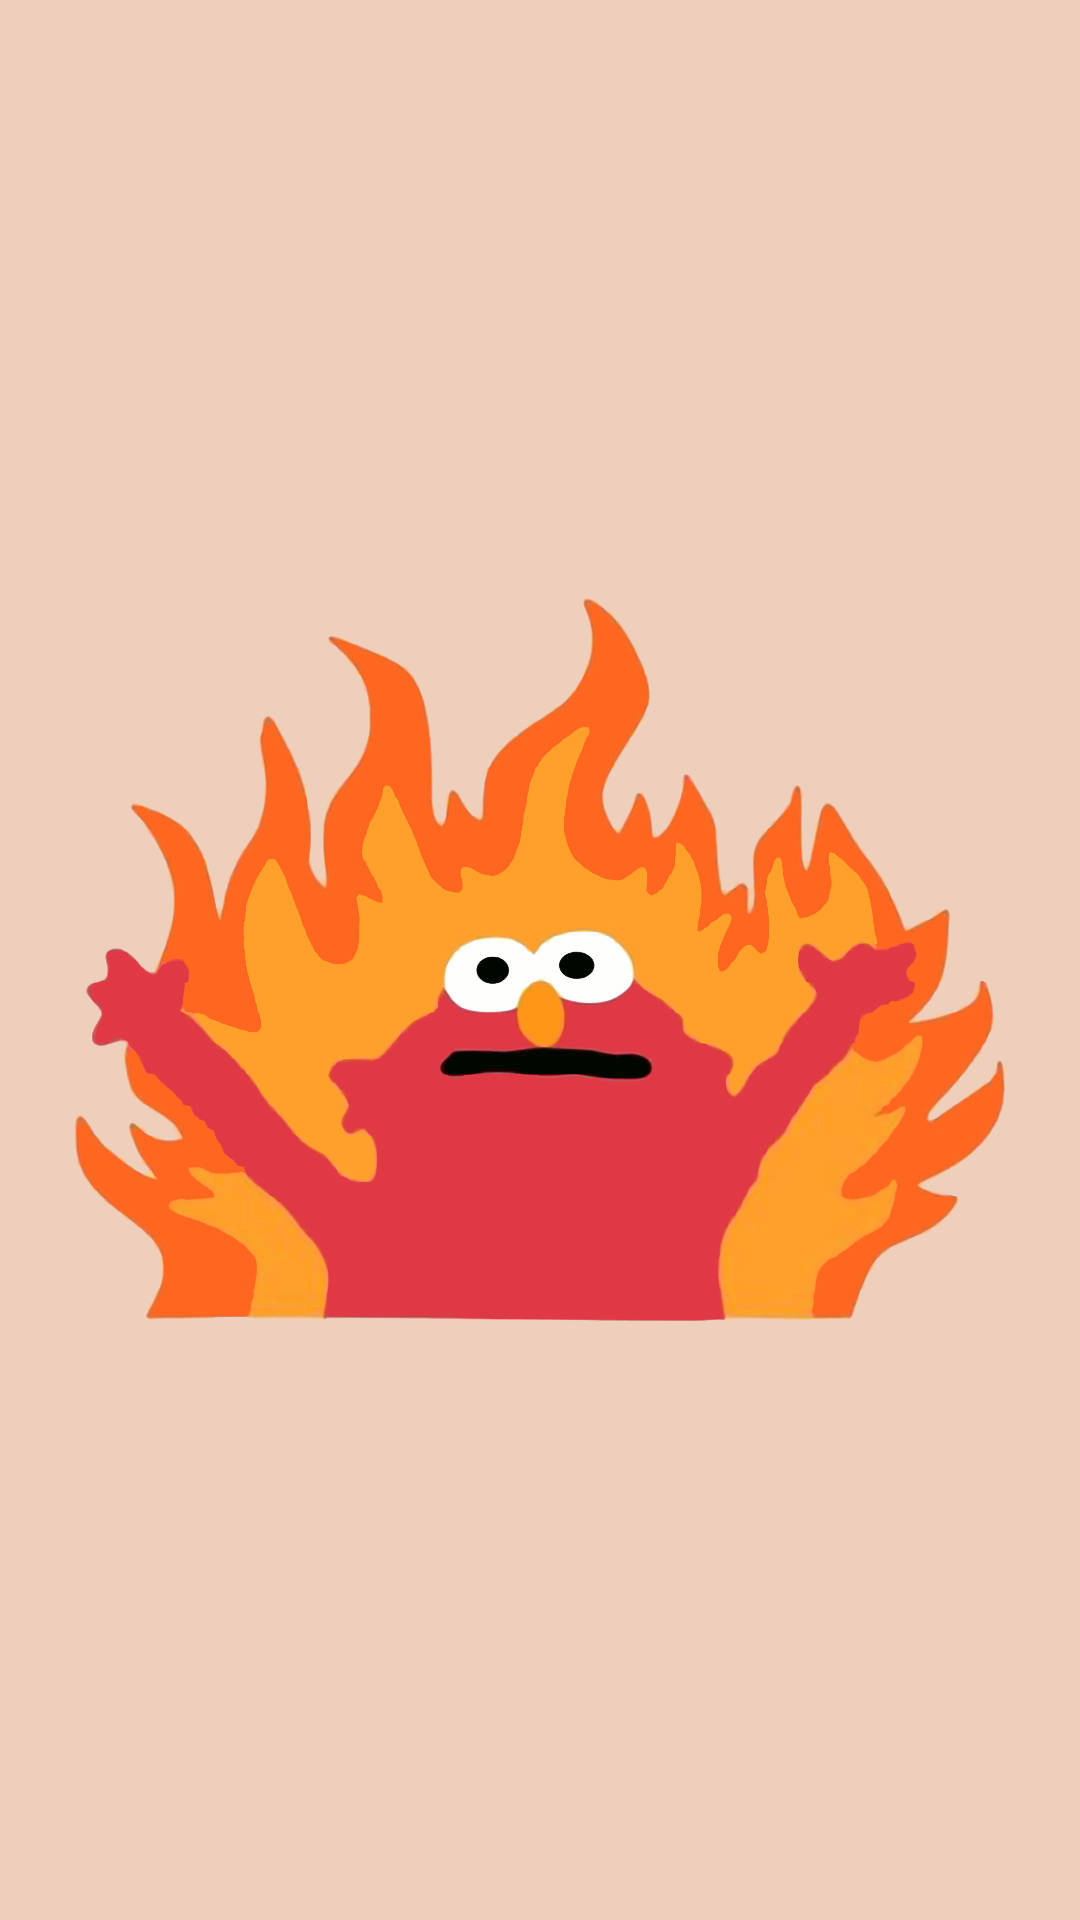 Lustigesästhetisches Elmo-burning Wallpaper